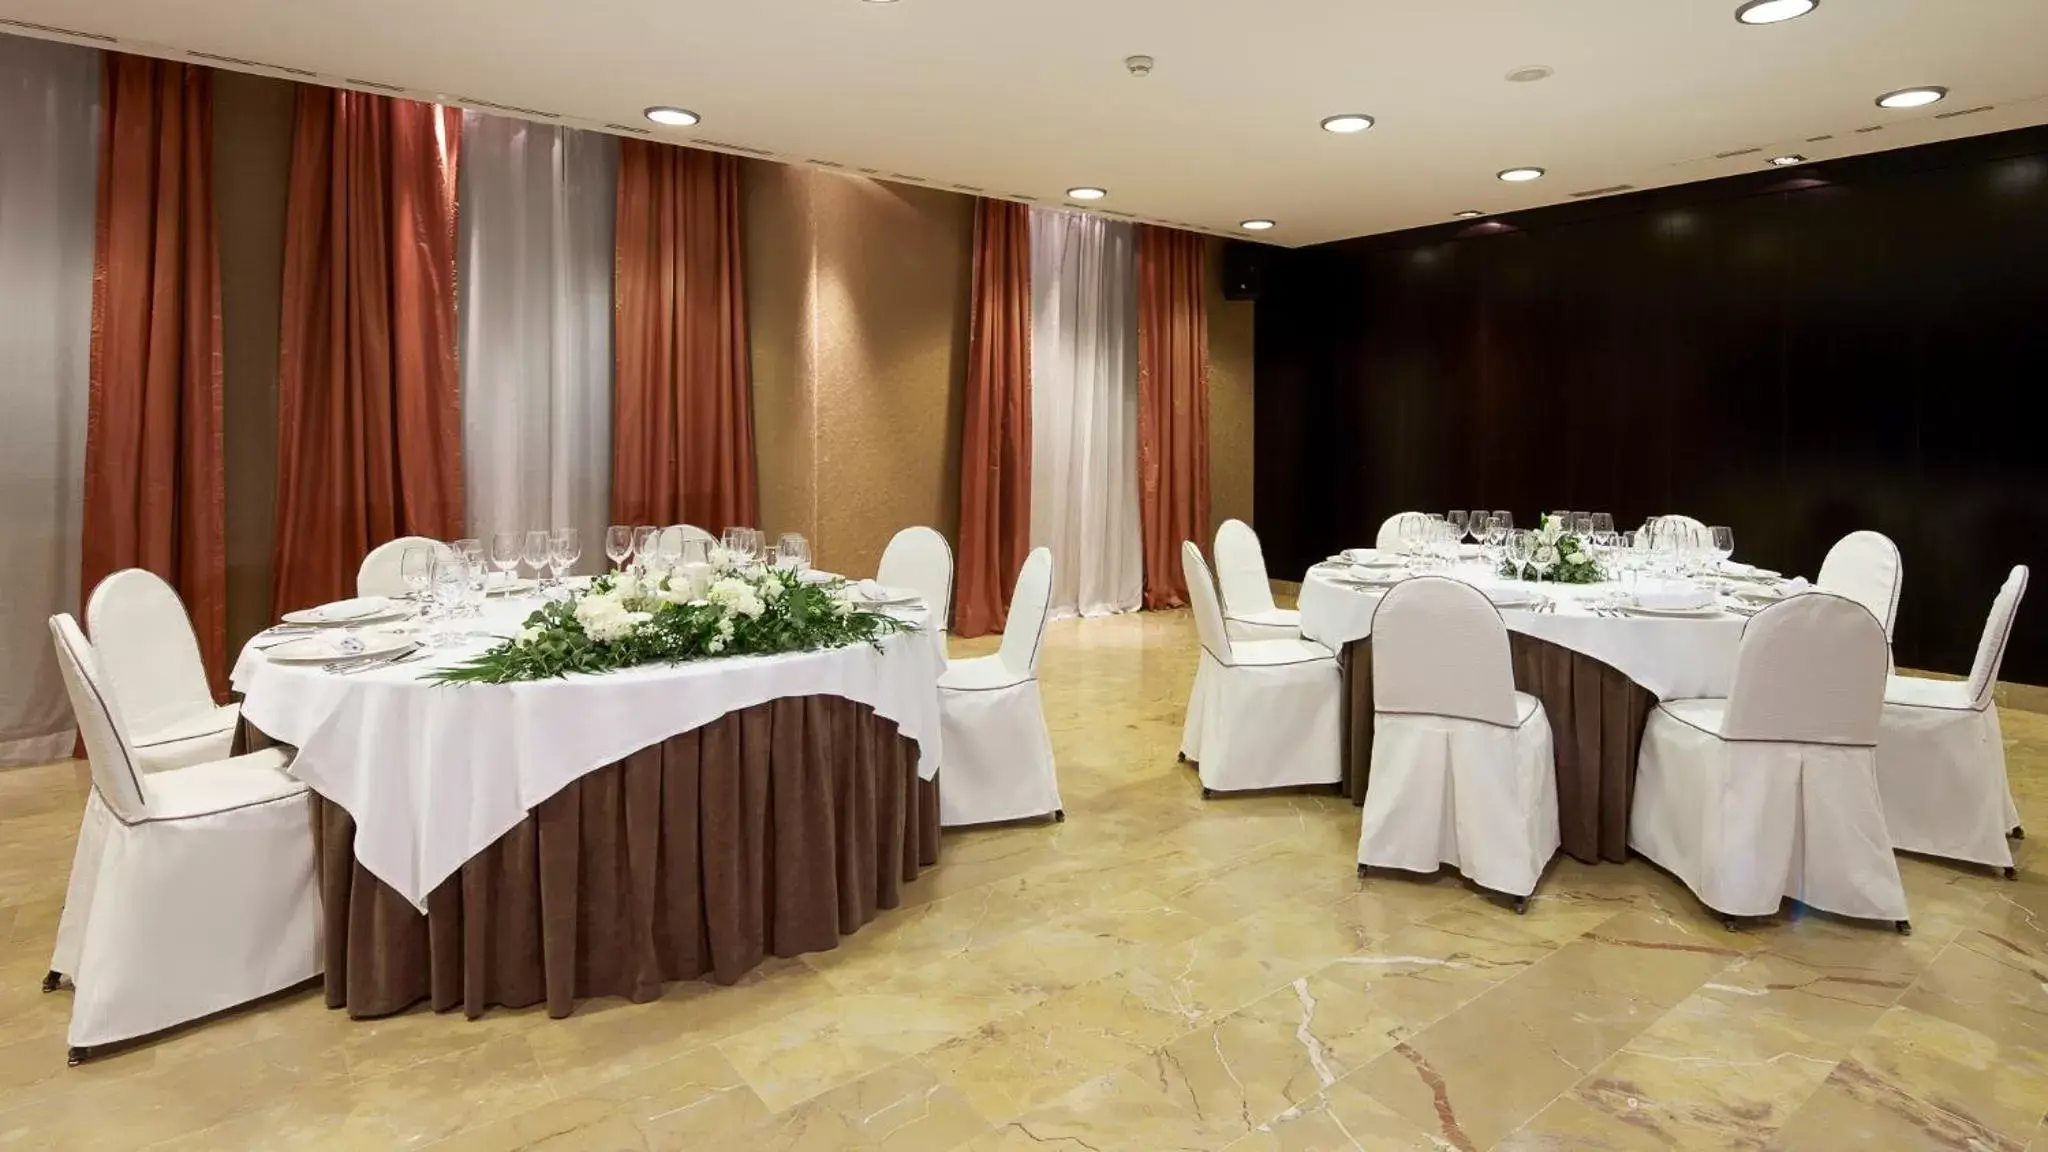 Banquet/Function facilities, Banquet Facilities in Sercotel Puerta de la Catedral